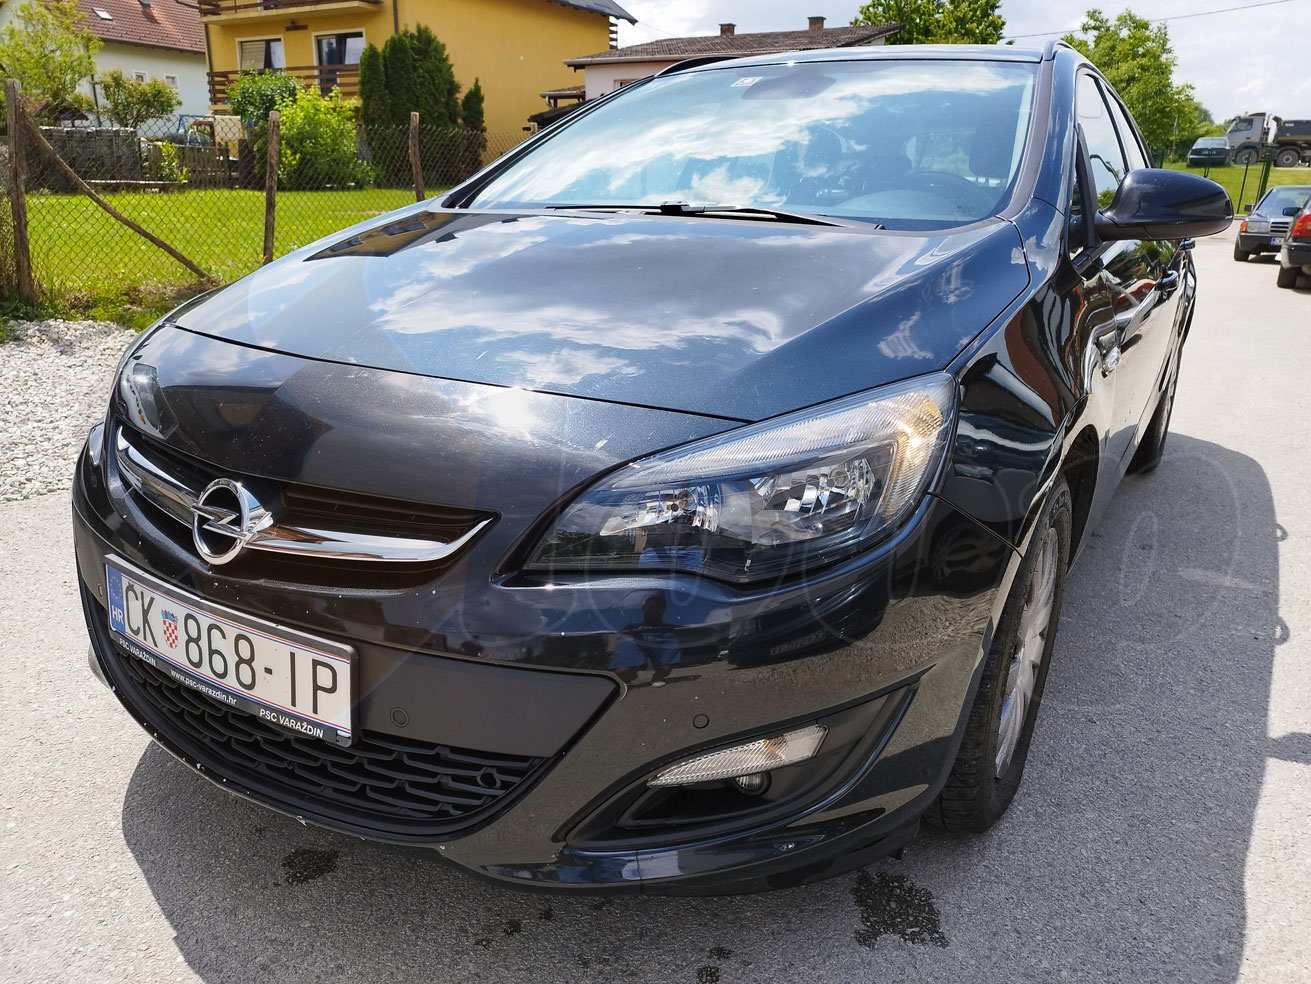 Opel Astra 1.6 CDTI / 2015 / ČK 868 IP